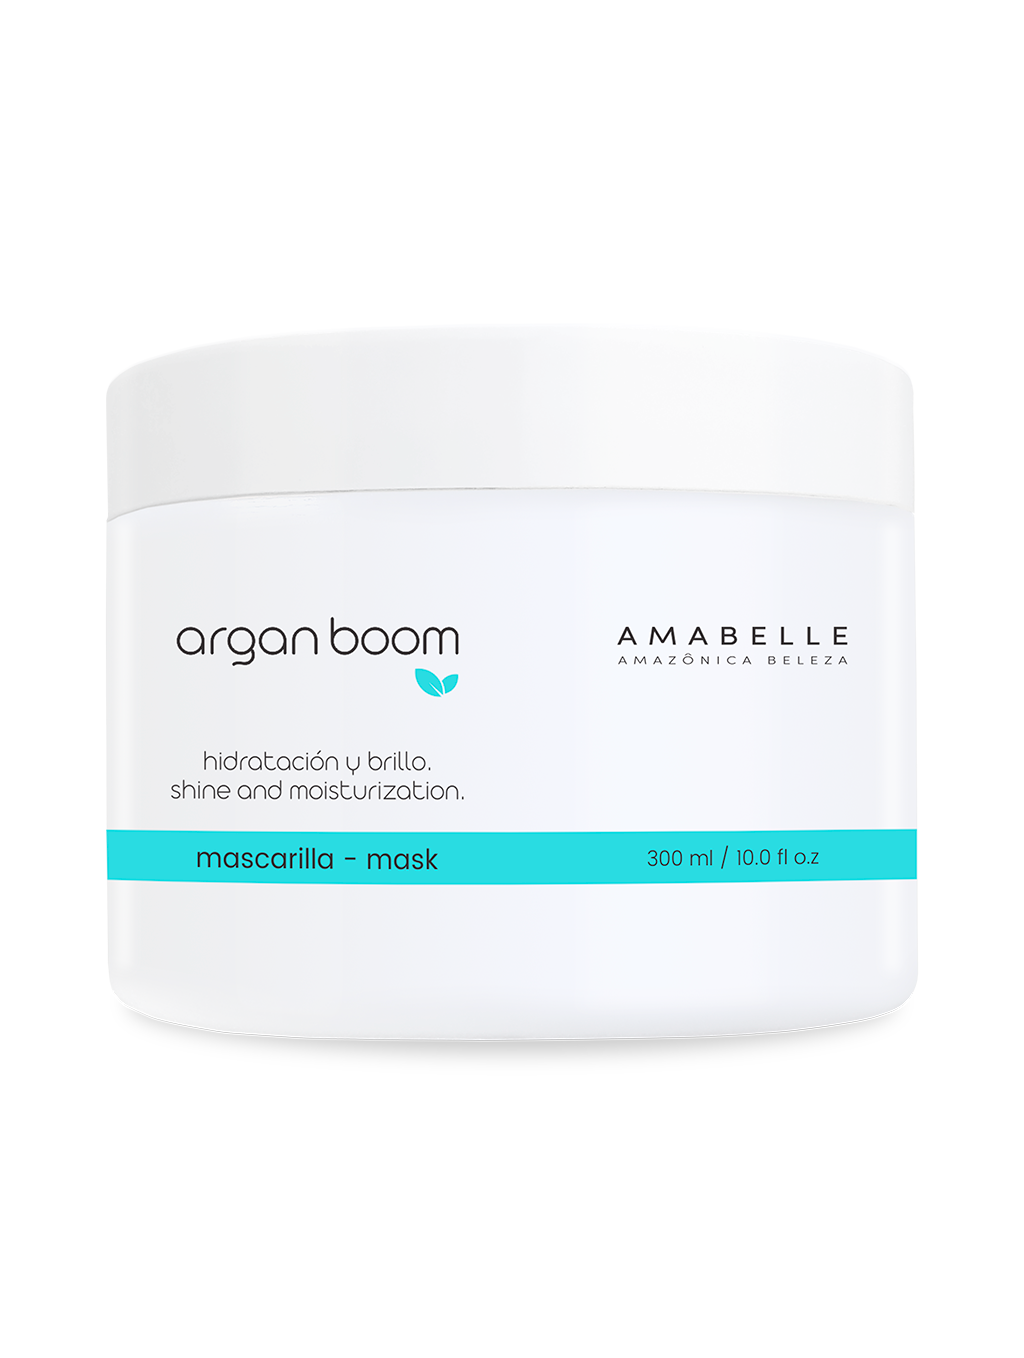 Argan Boom Mask, Hair Hydration